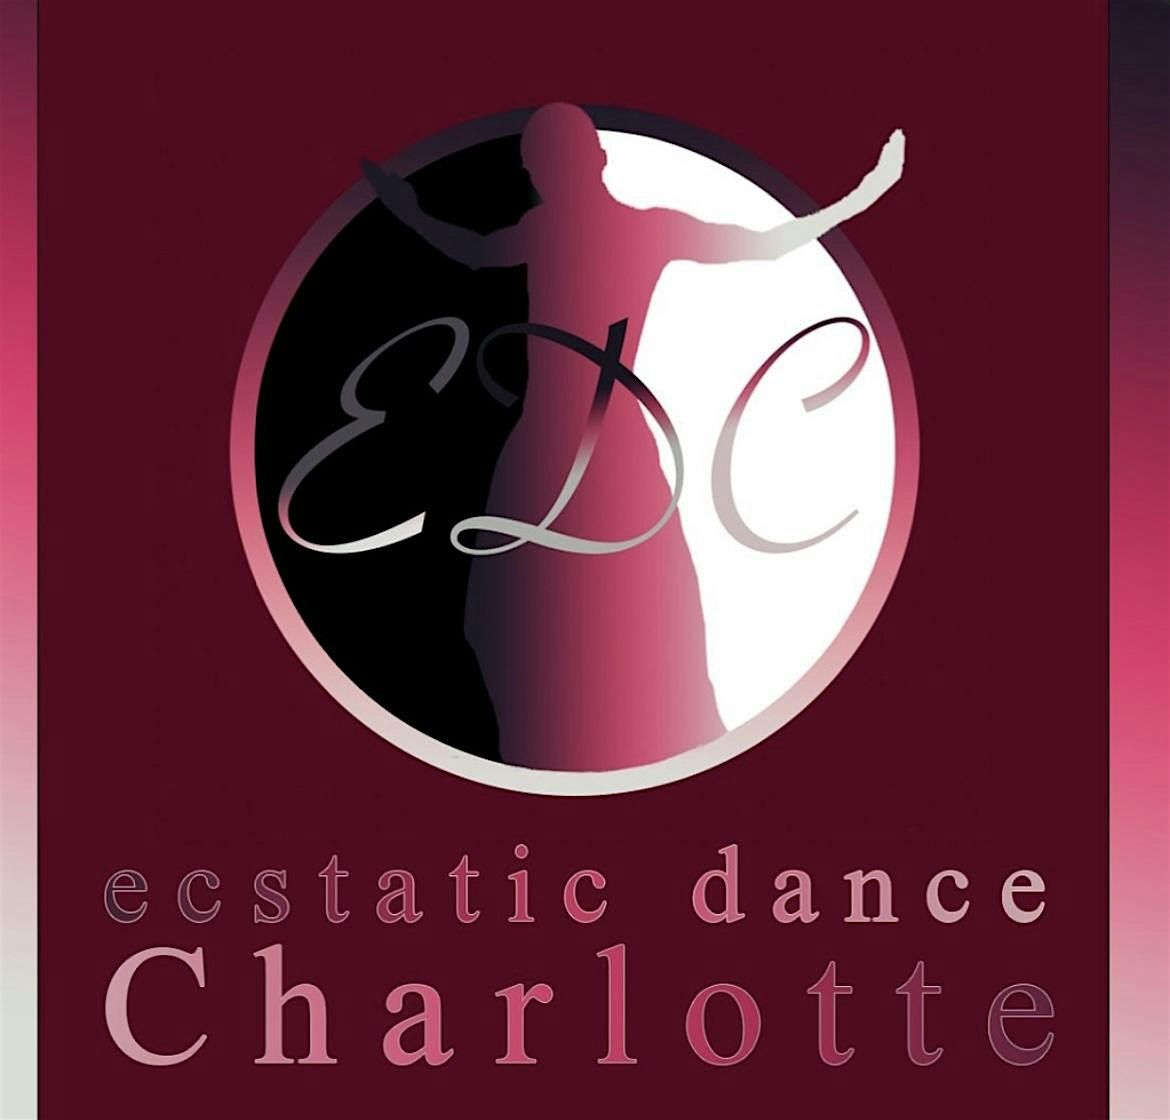 Ecstatic Dance Charlotte - NEW ARTIST ALERT